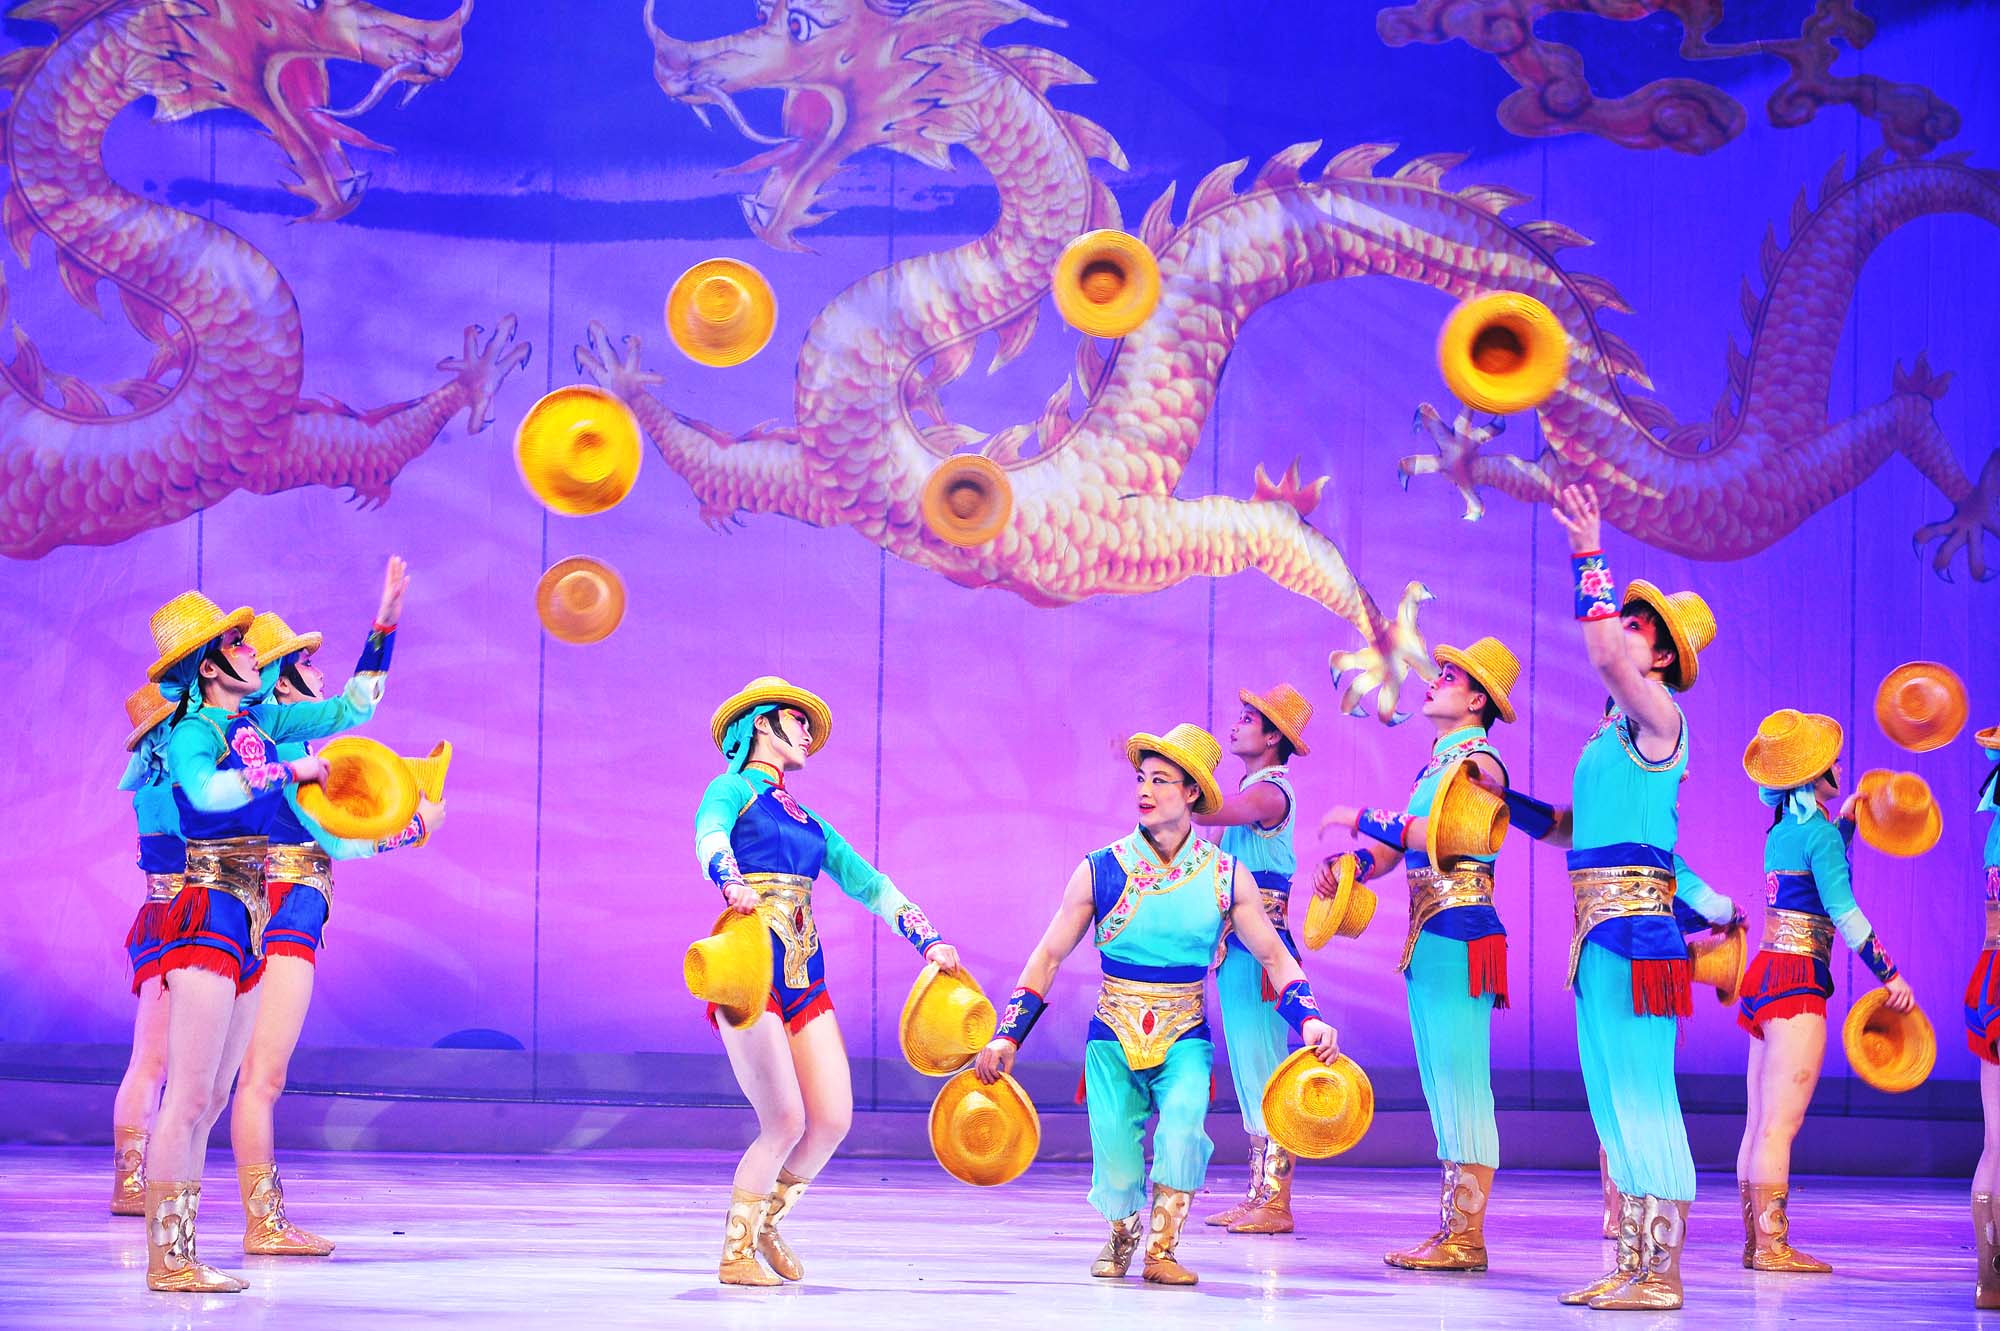 El “Gran Circo Acrobático de China” llega al Teatro Chapí de Villena